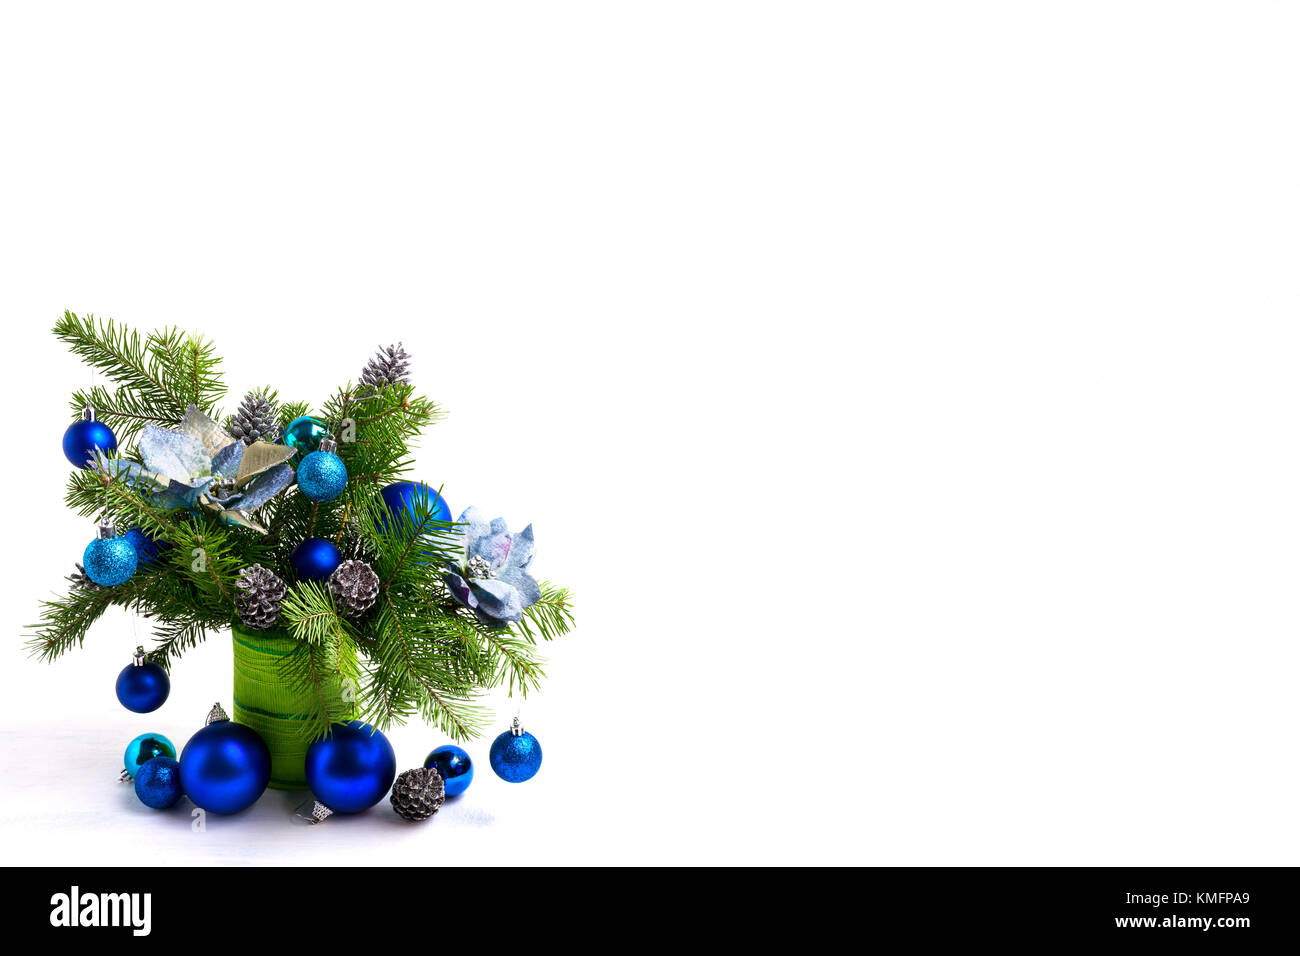 Weihnachten Tabelle Mittelstück mit Seide Poinsettias, Blau, Silber Schmuck Tannenzapfen und Tannenzweigen in grün Vase, kopieren Raum Stockfoto